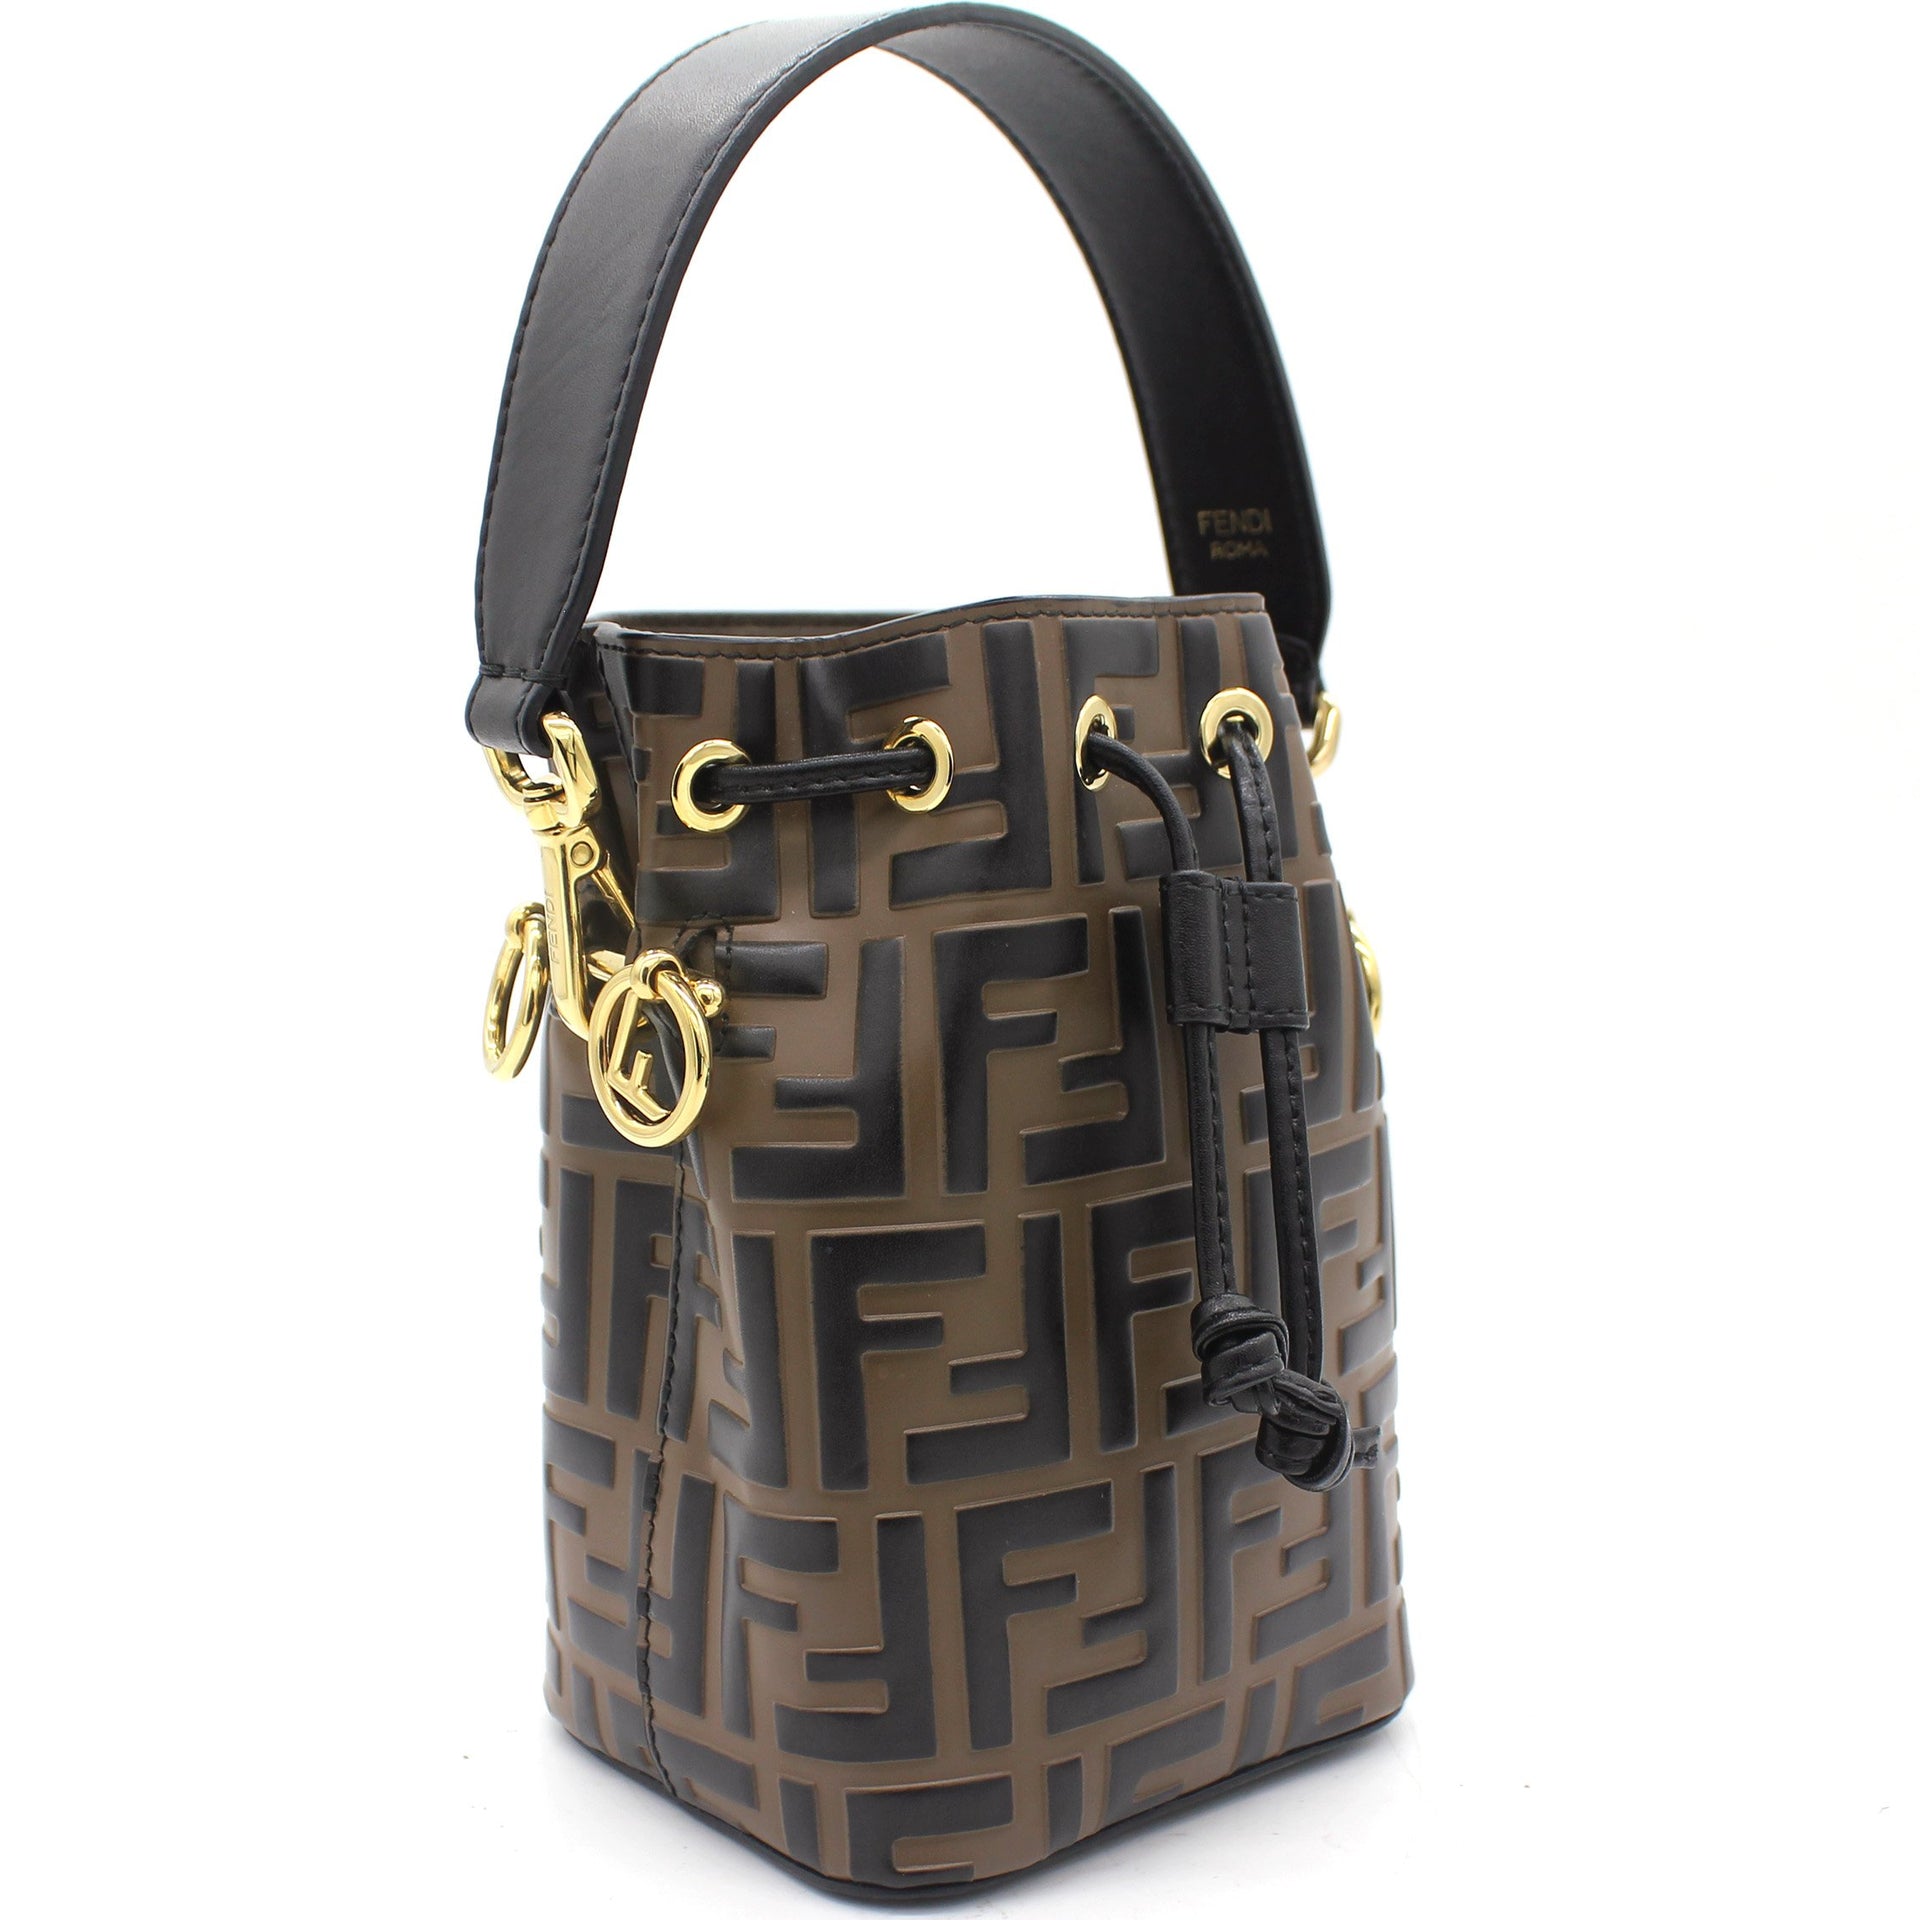 Fendi Black, Pattern Print Mini Mon Tresor Bucket Bag